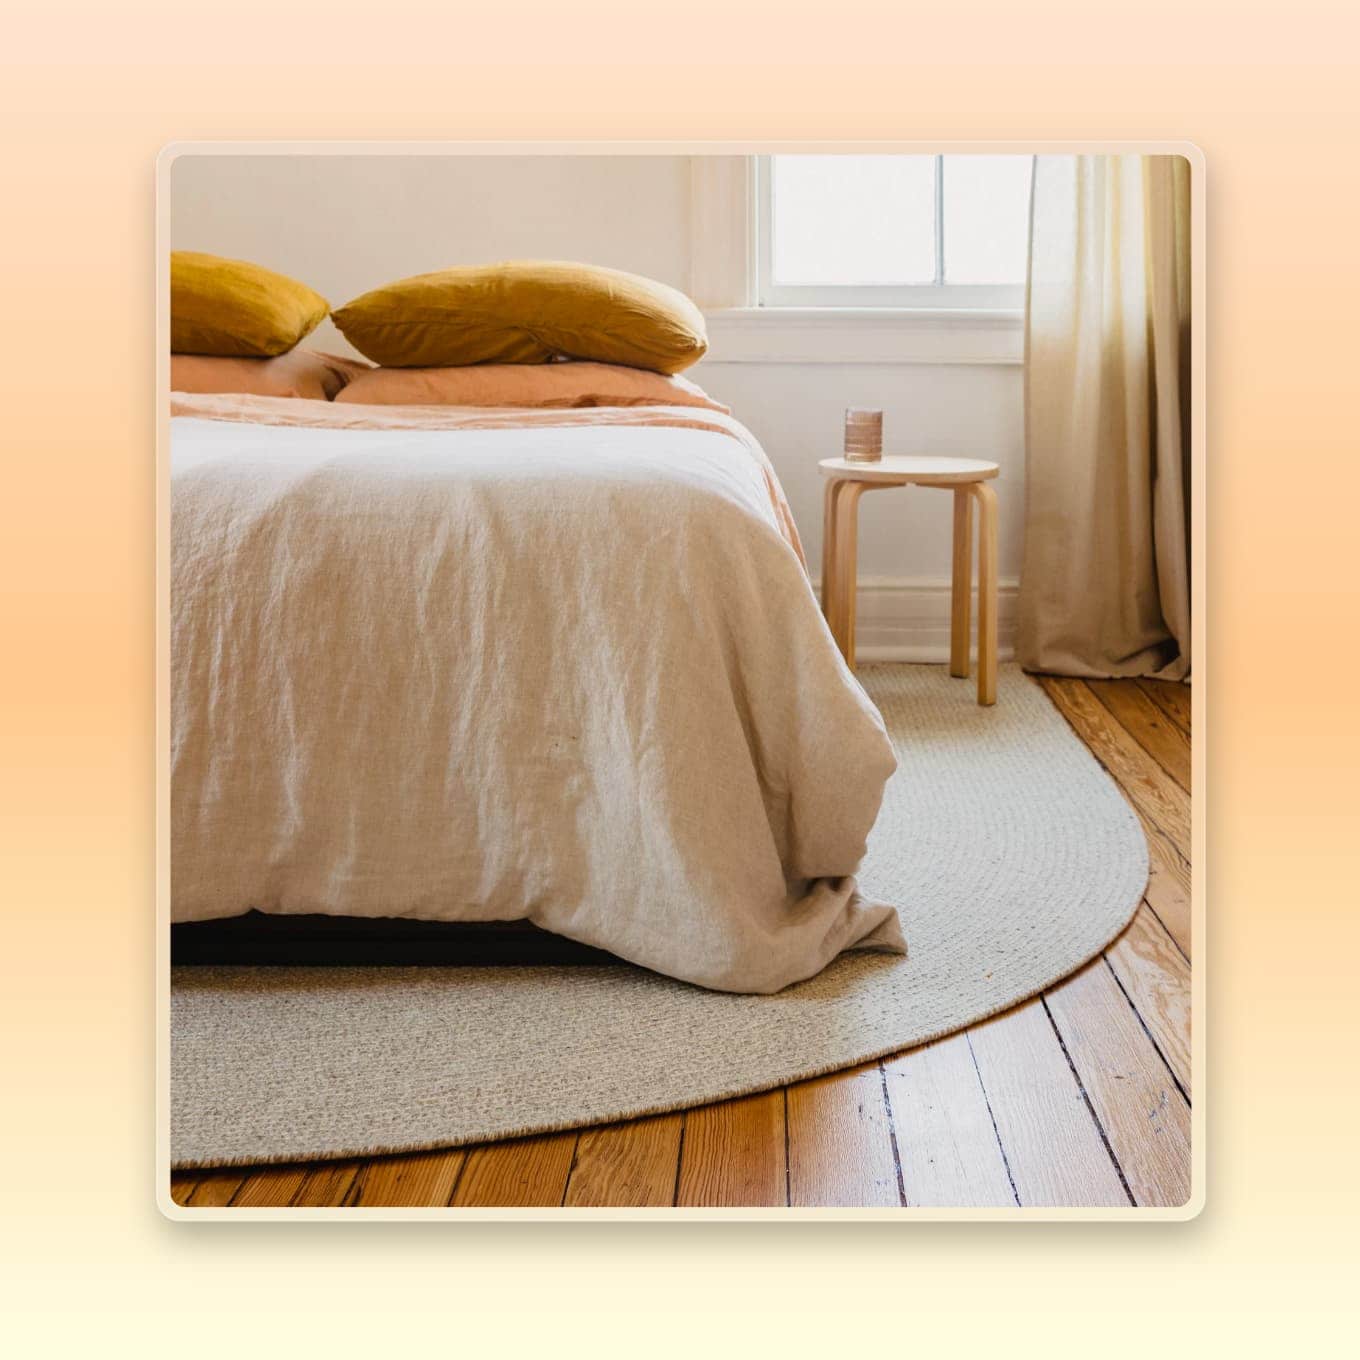 A unique semi-circle rug for bedroom